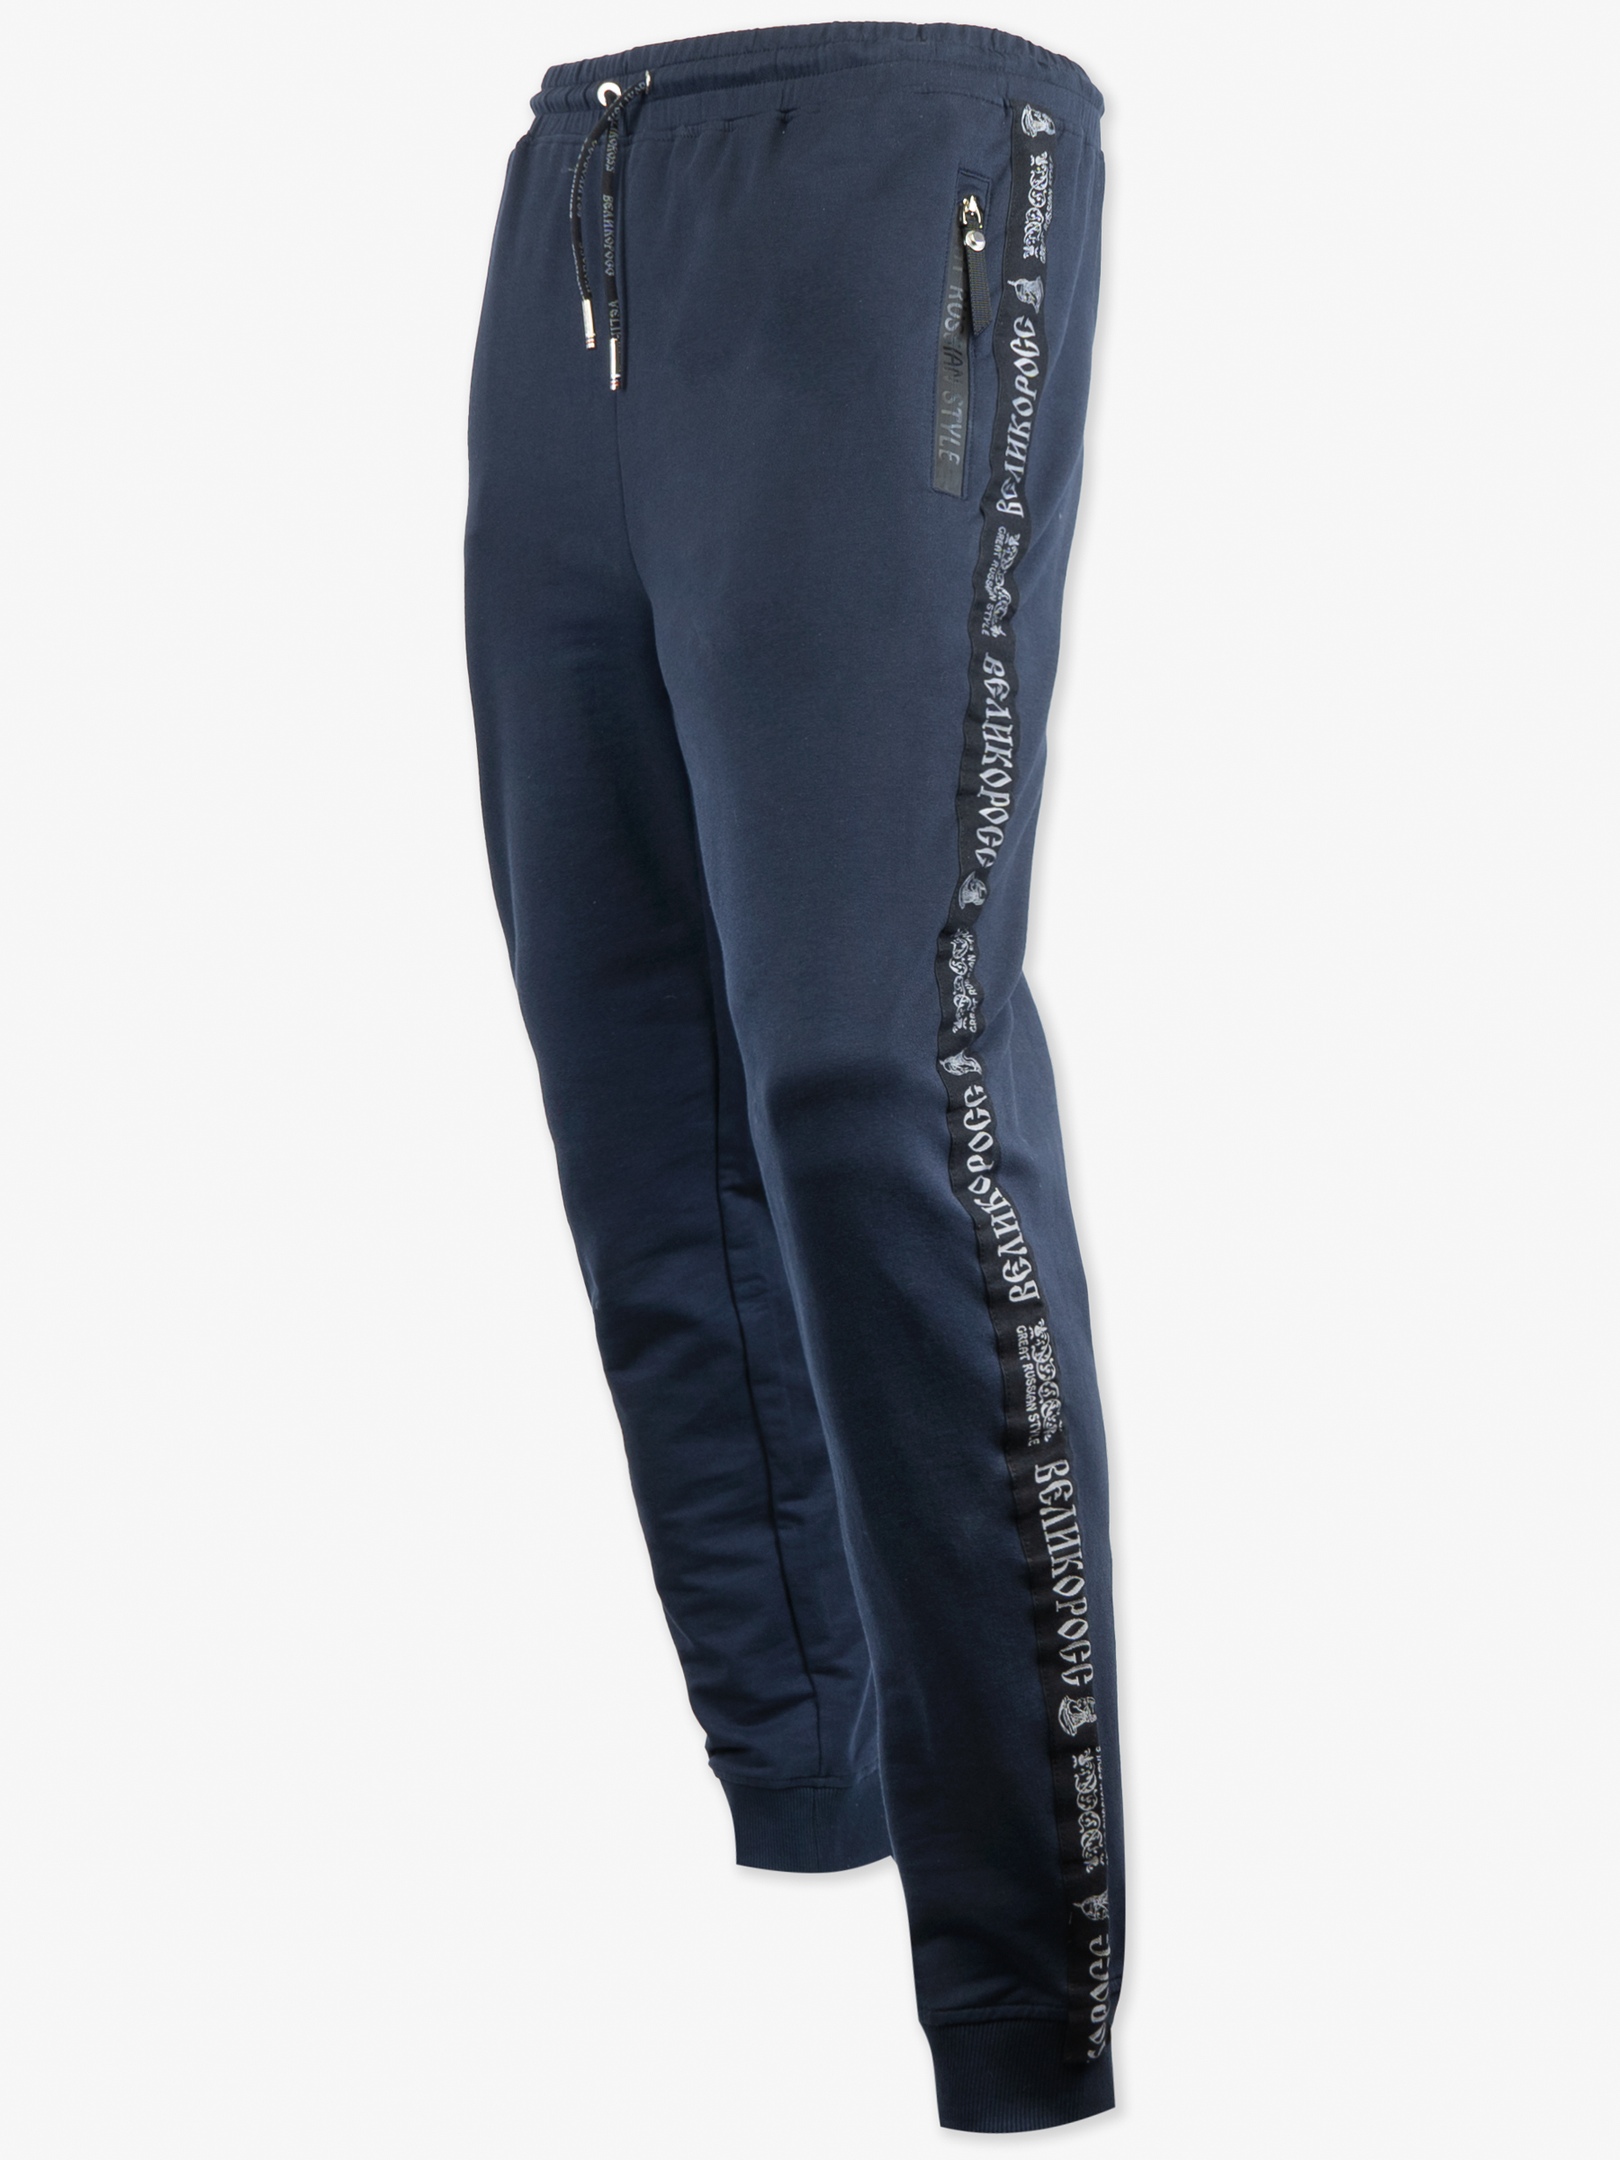 Спортивные брюки мужские Великоросс 9 синие 48 RU